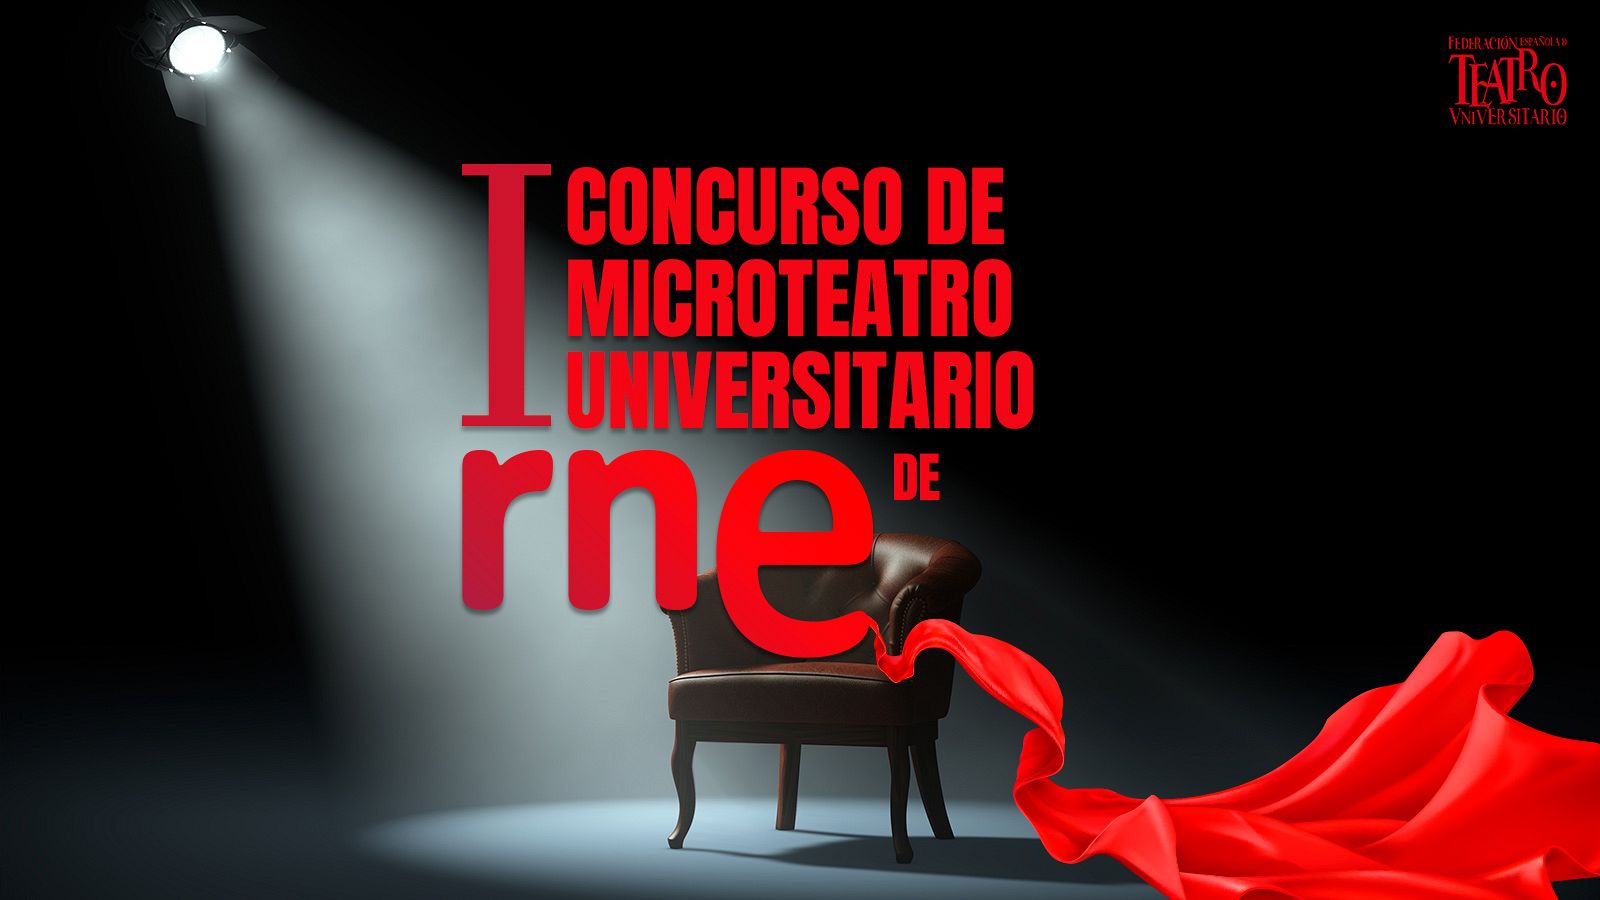 Concurso de Microteatro Universitario de RNE